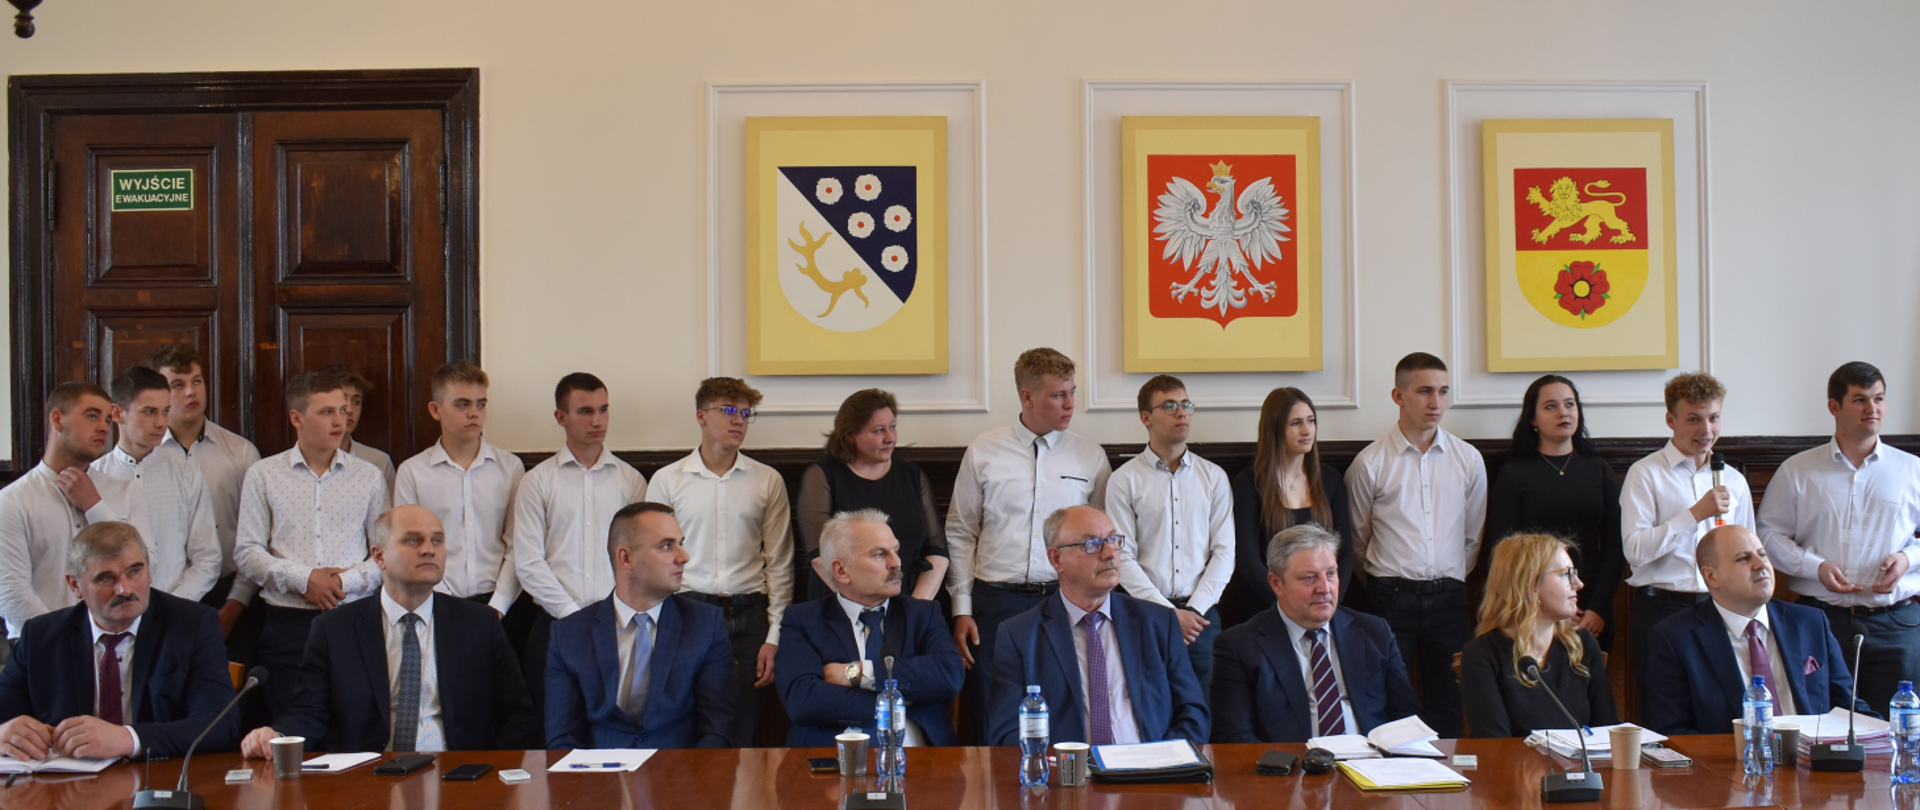 Młodzież i radni Rady Powiatu podczas 69. Sesji Rady Powiatu w Nowym Mieście Lubawskim